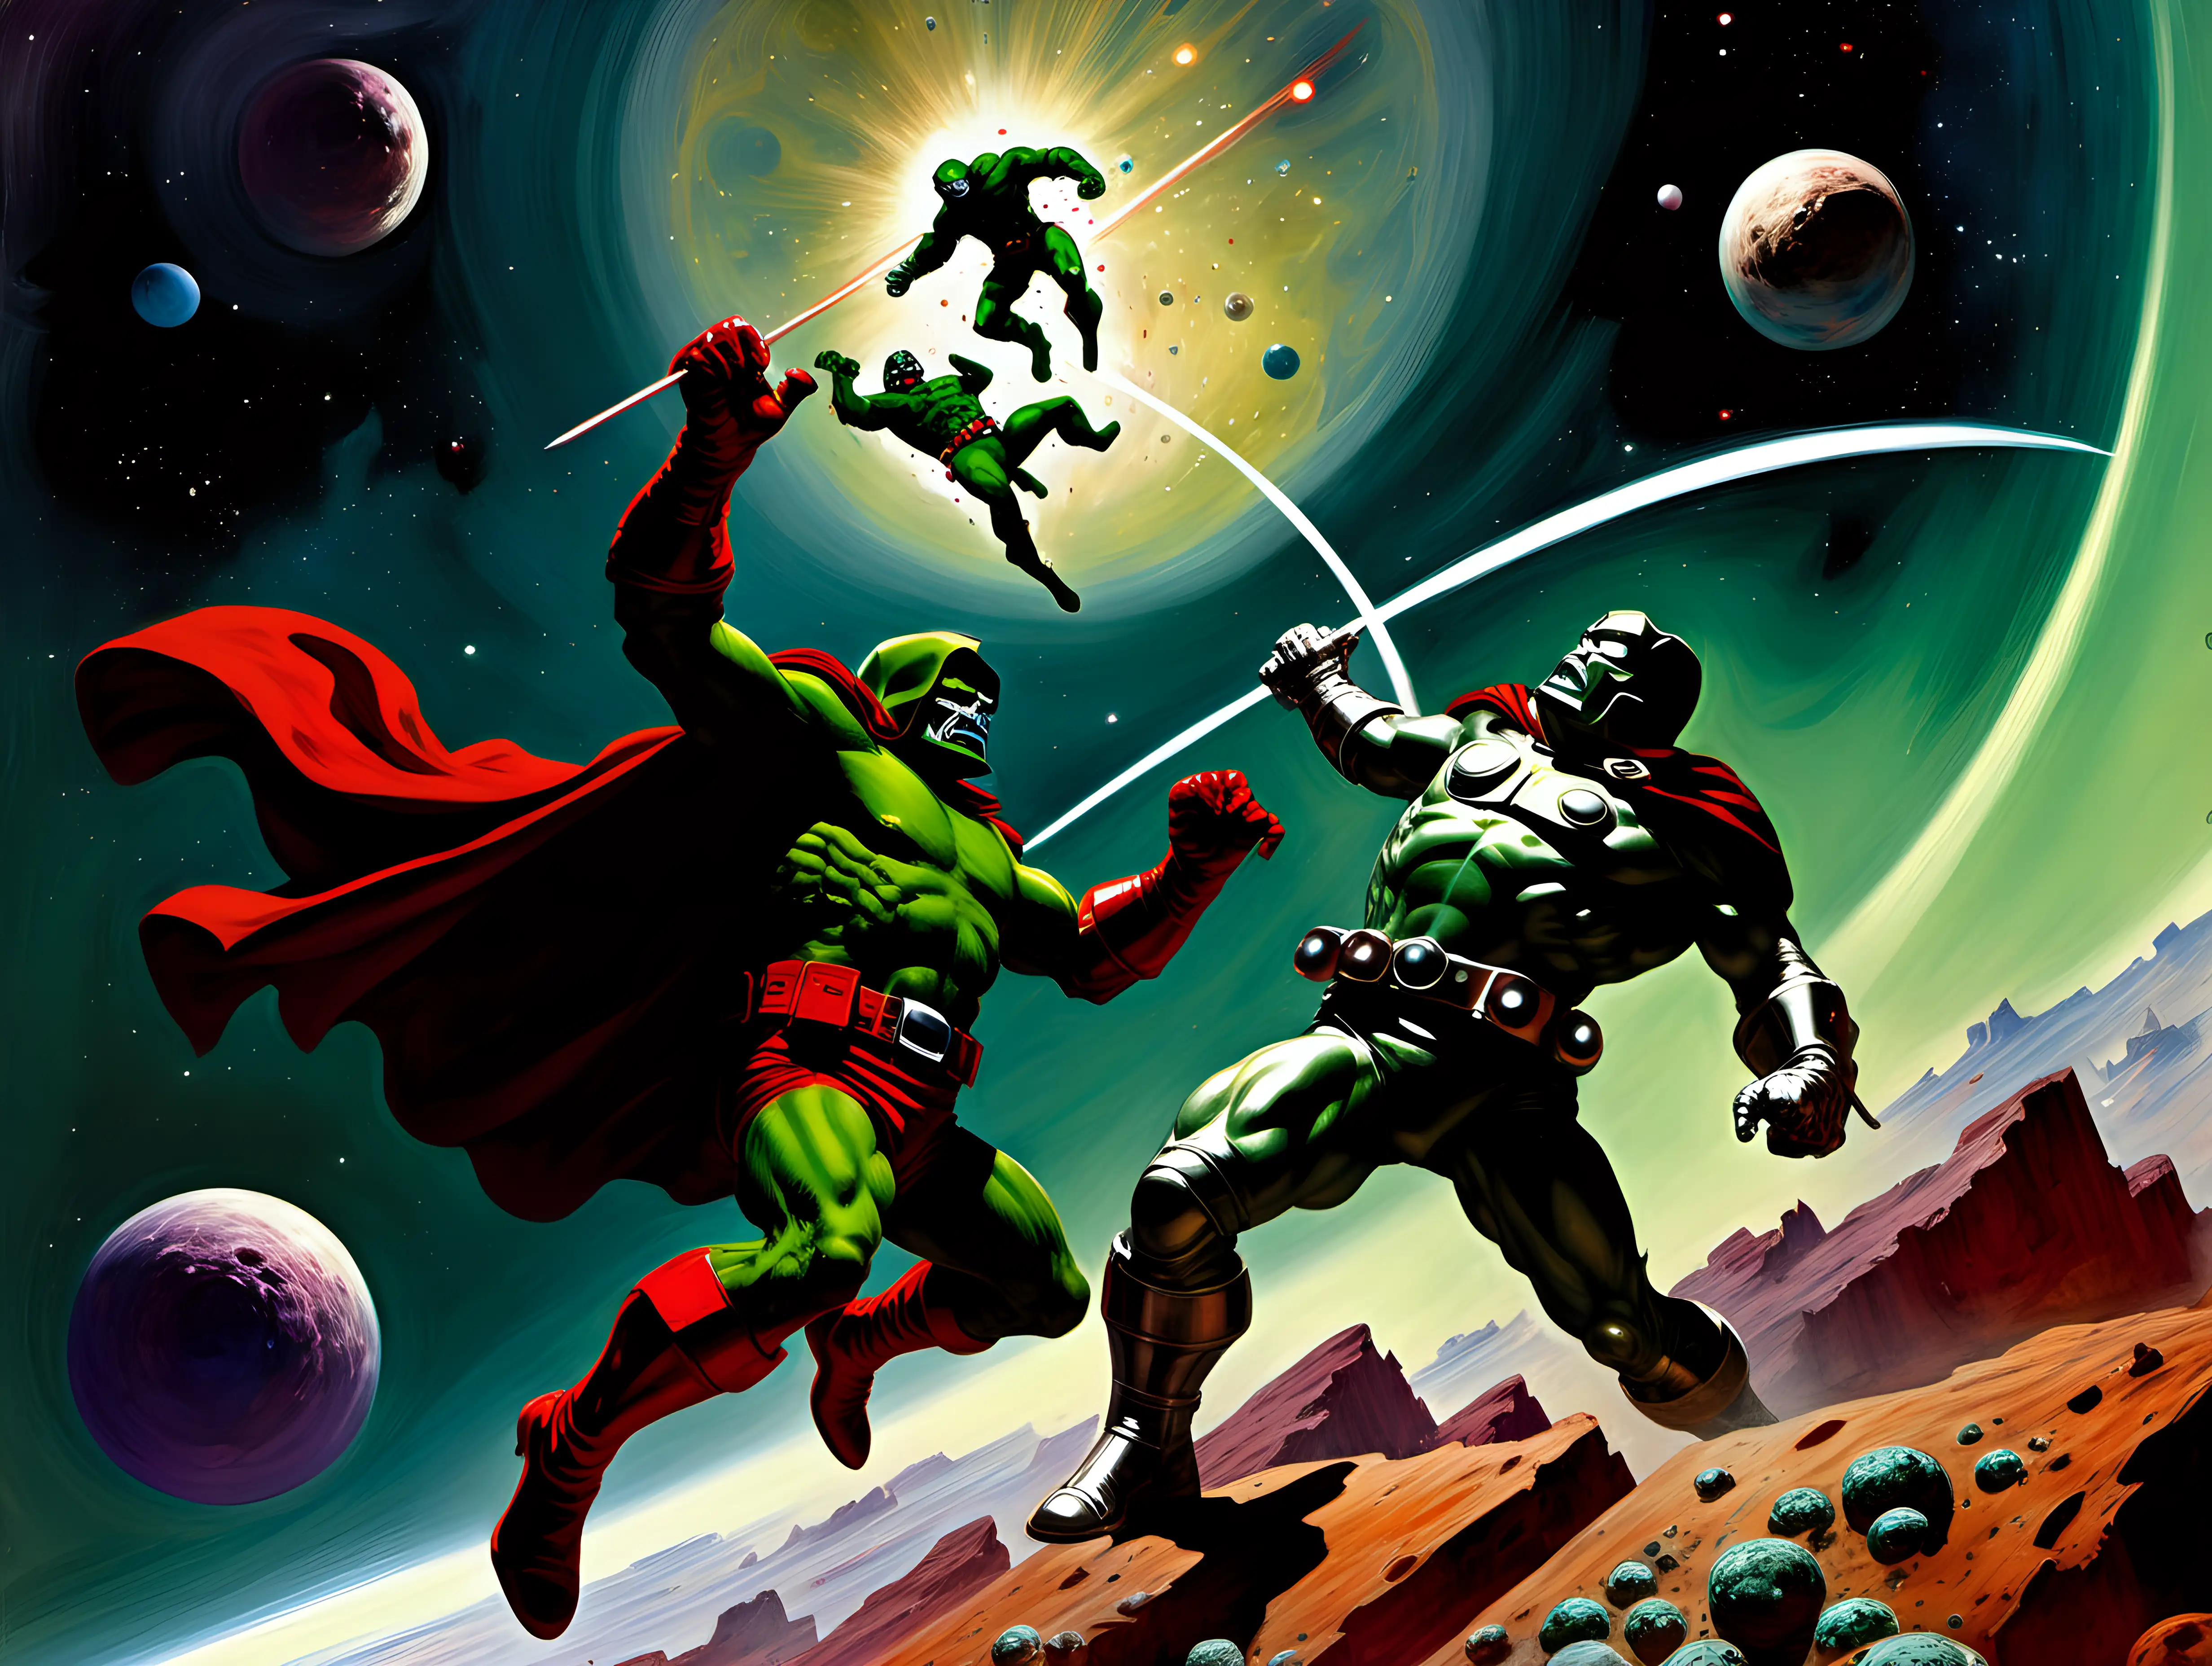 Daredevil fighting Doctor Doom  in space Frank Frazetta style